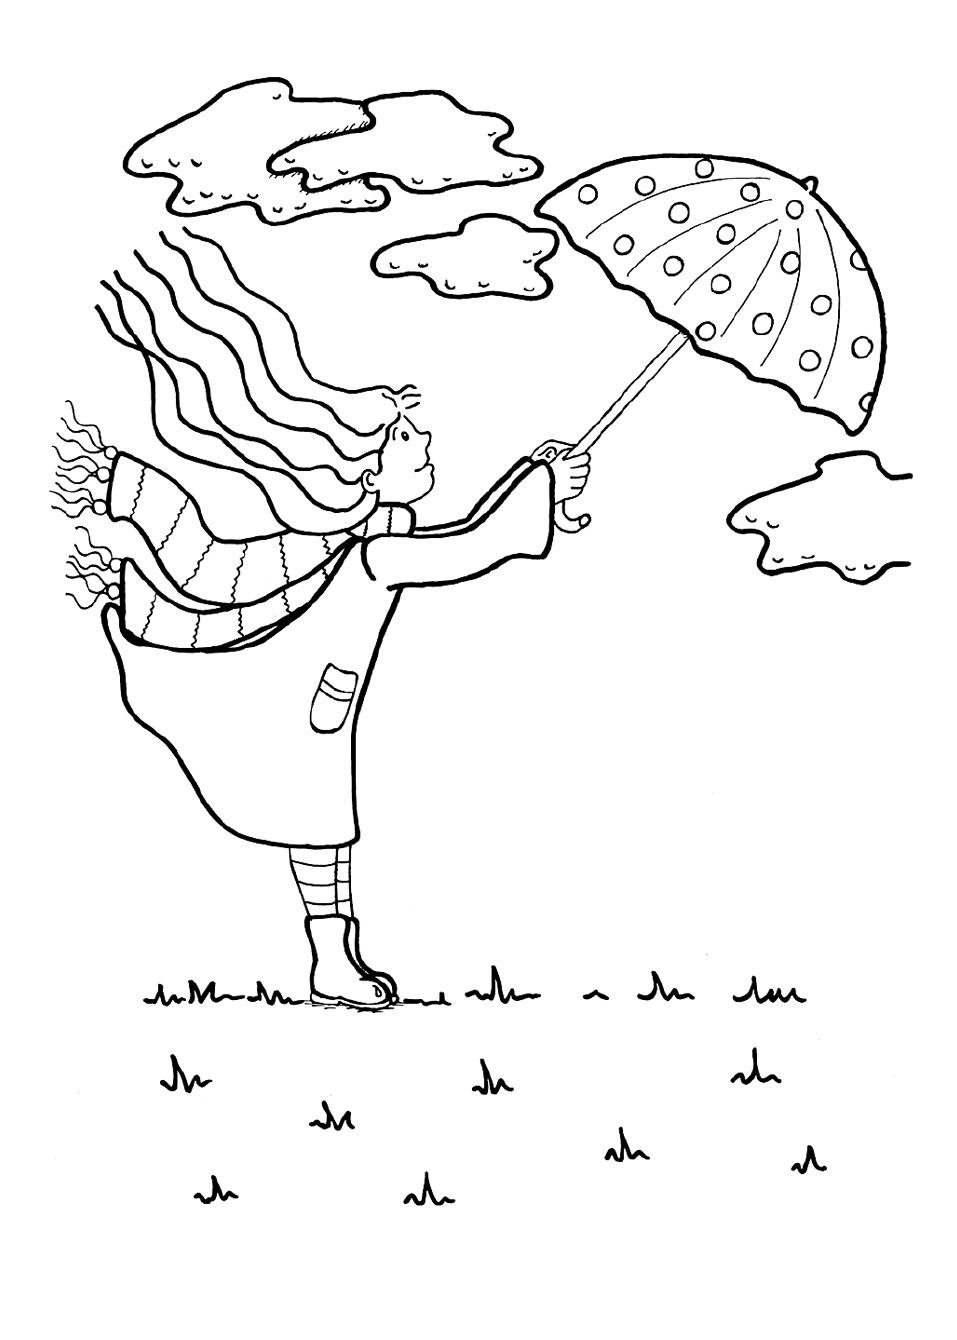 Kolorowanka jesień dziewczyna w płaszczu i szalu stoi z rozwianymi włosami trzymając mocno parasol